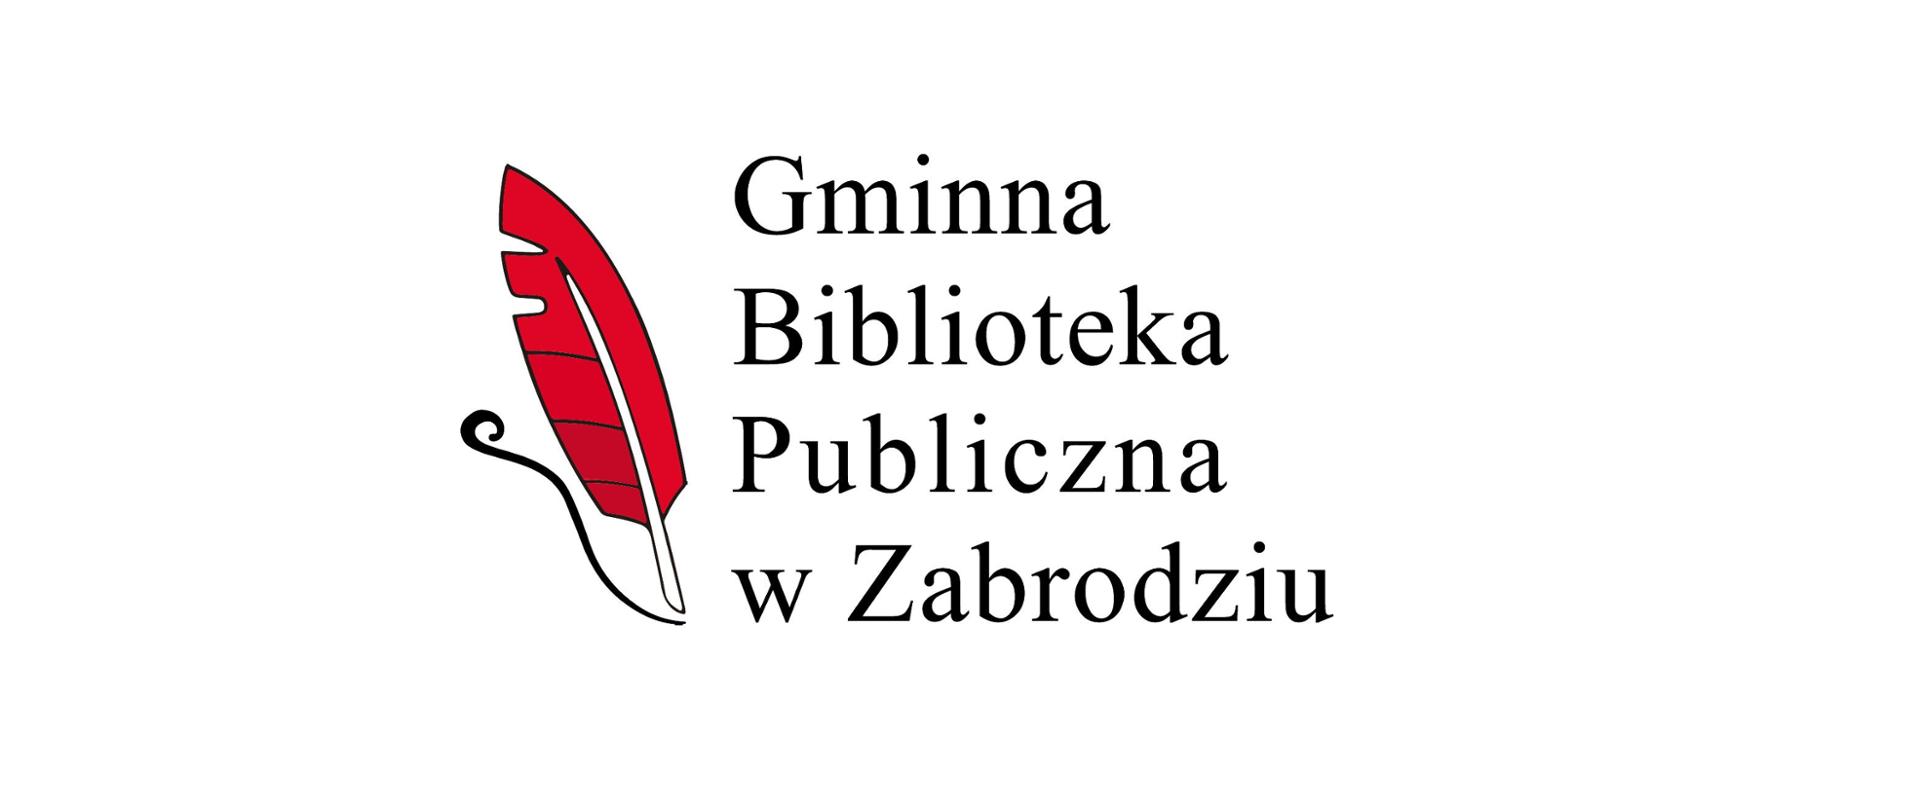 Czerwone pióro i napis Gminna Biblioteka Publiczna w Zabrodziu